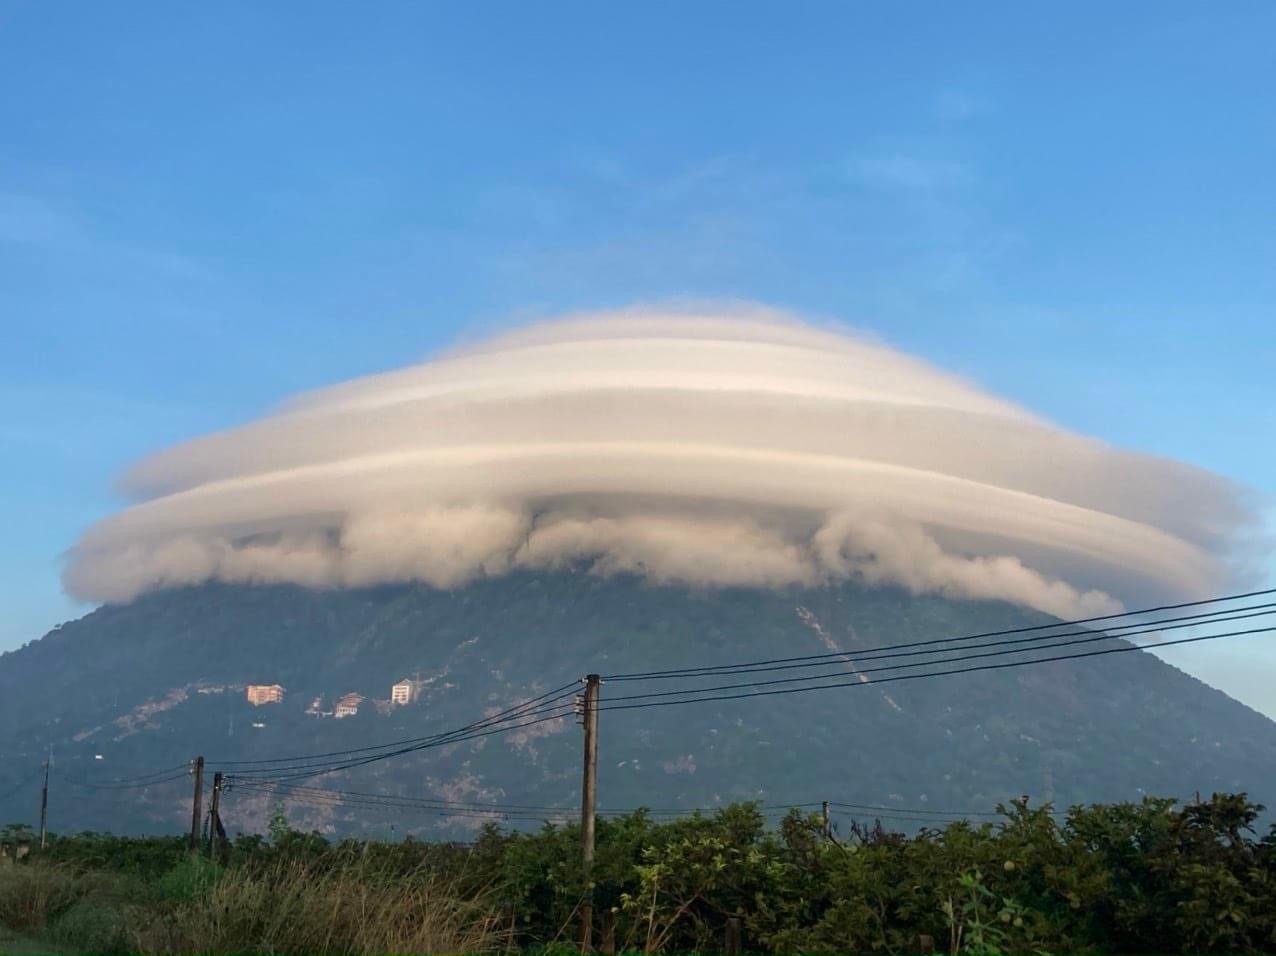 Đám mây hình 'độc lạ' trên đỉnh núi Bà Đen hôm nay: Vì sao hình thành?